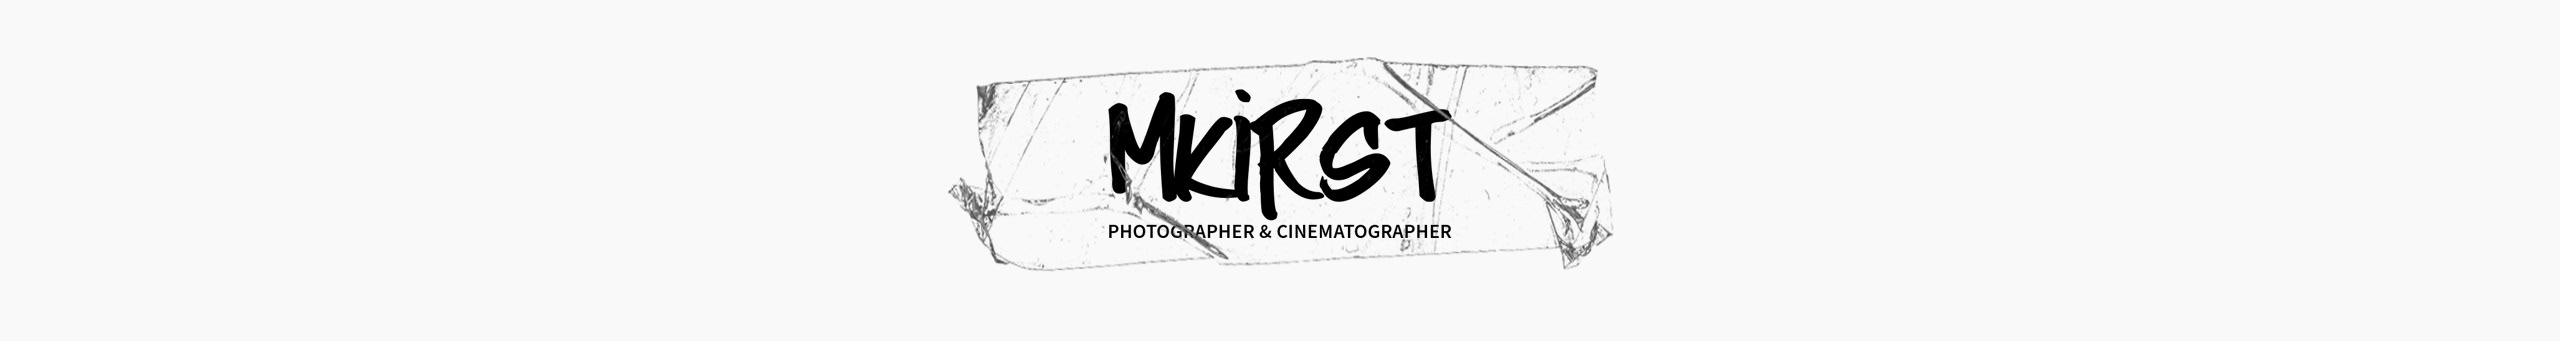 Profil-Banner von Max Kirst